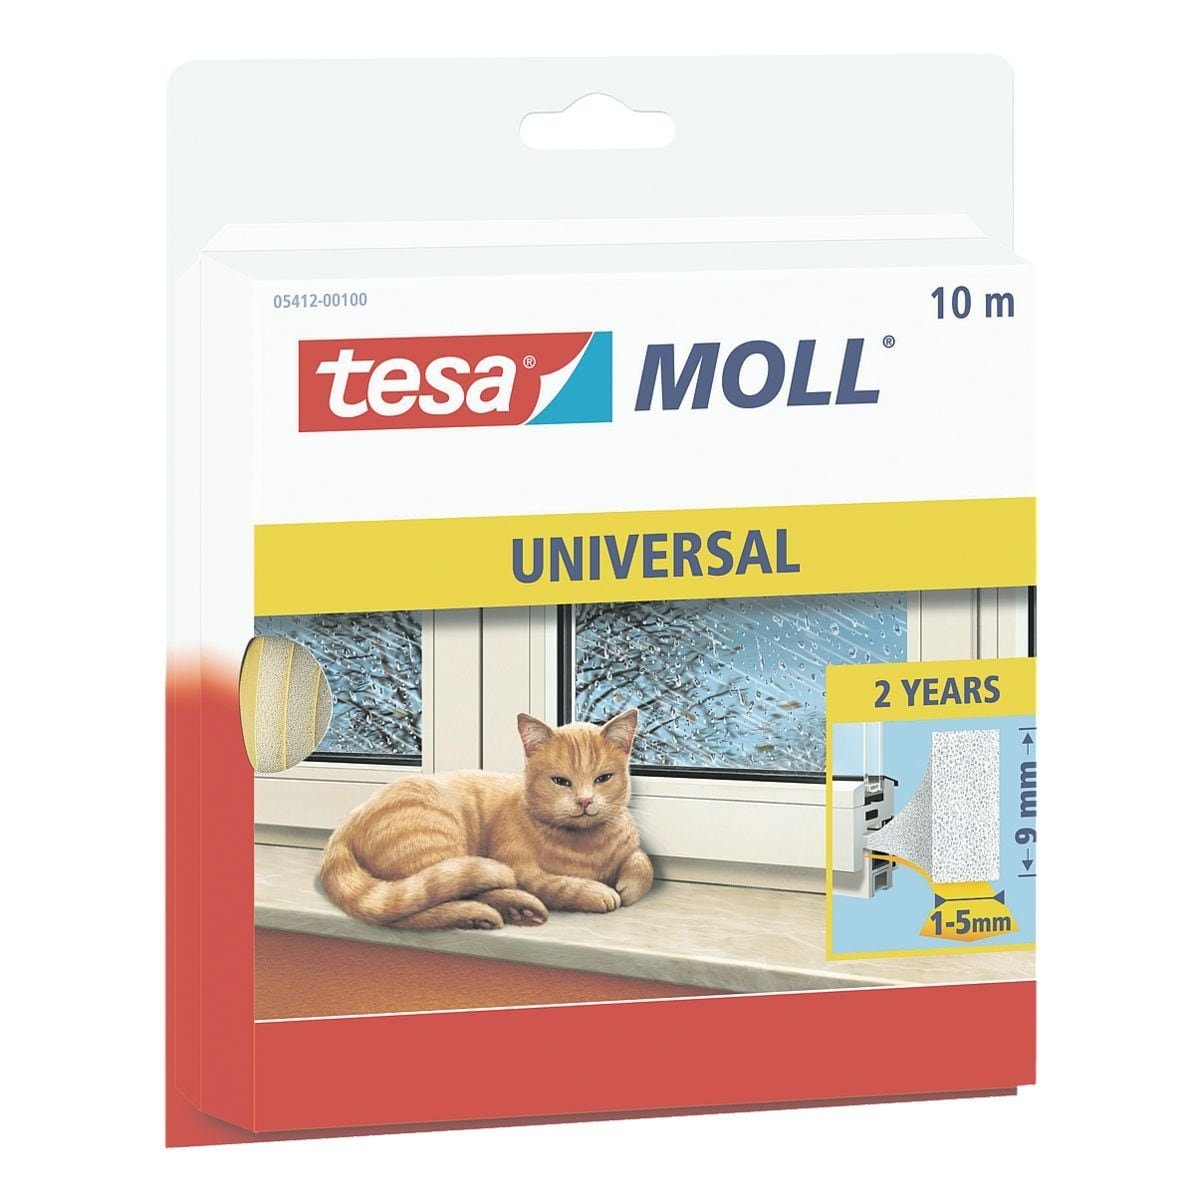 tesa Dichtband tesamoll® Universal für Spaltentiefe 1-5 mm